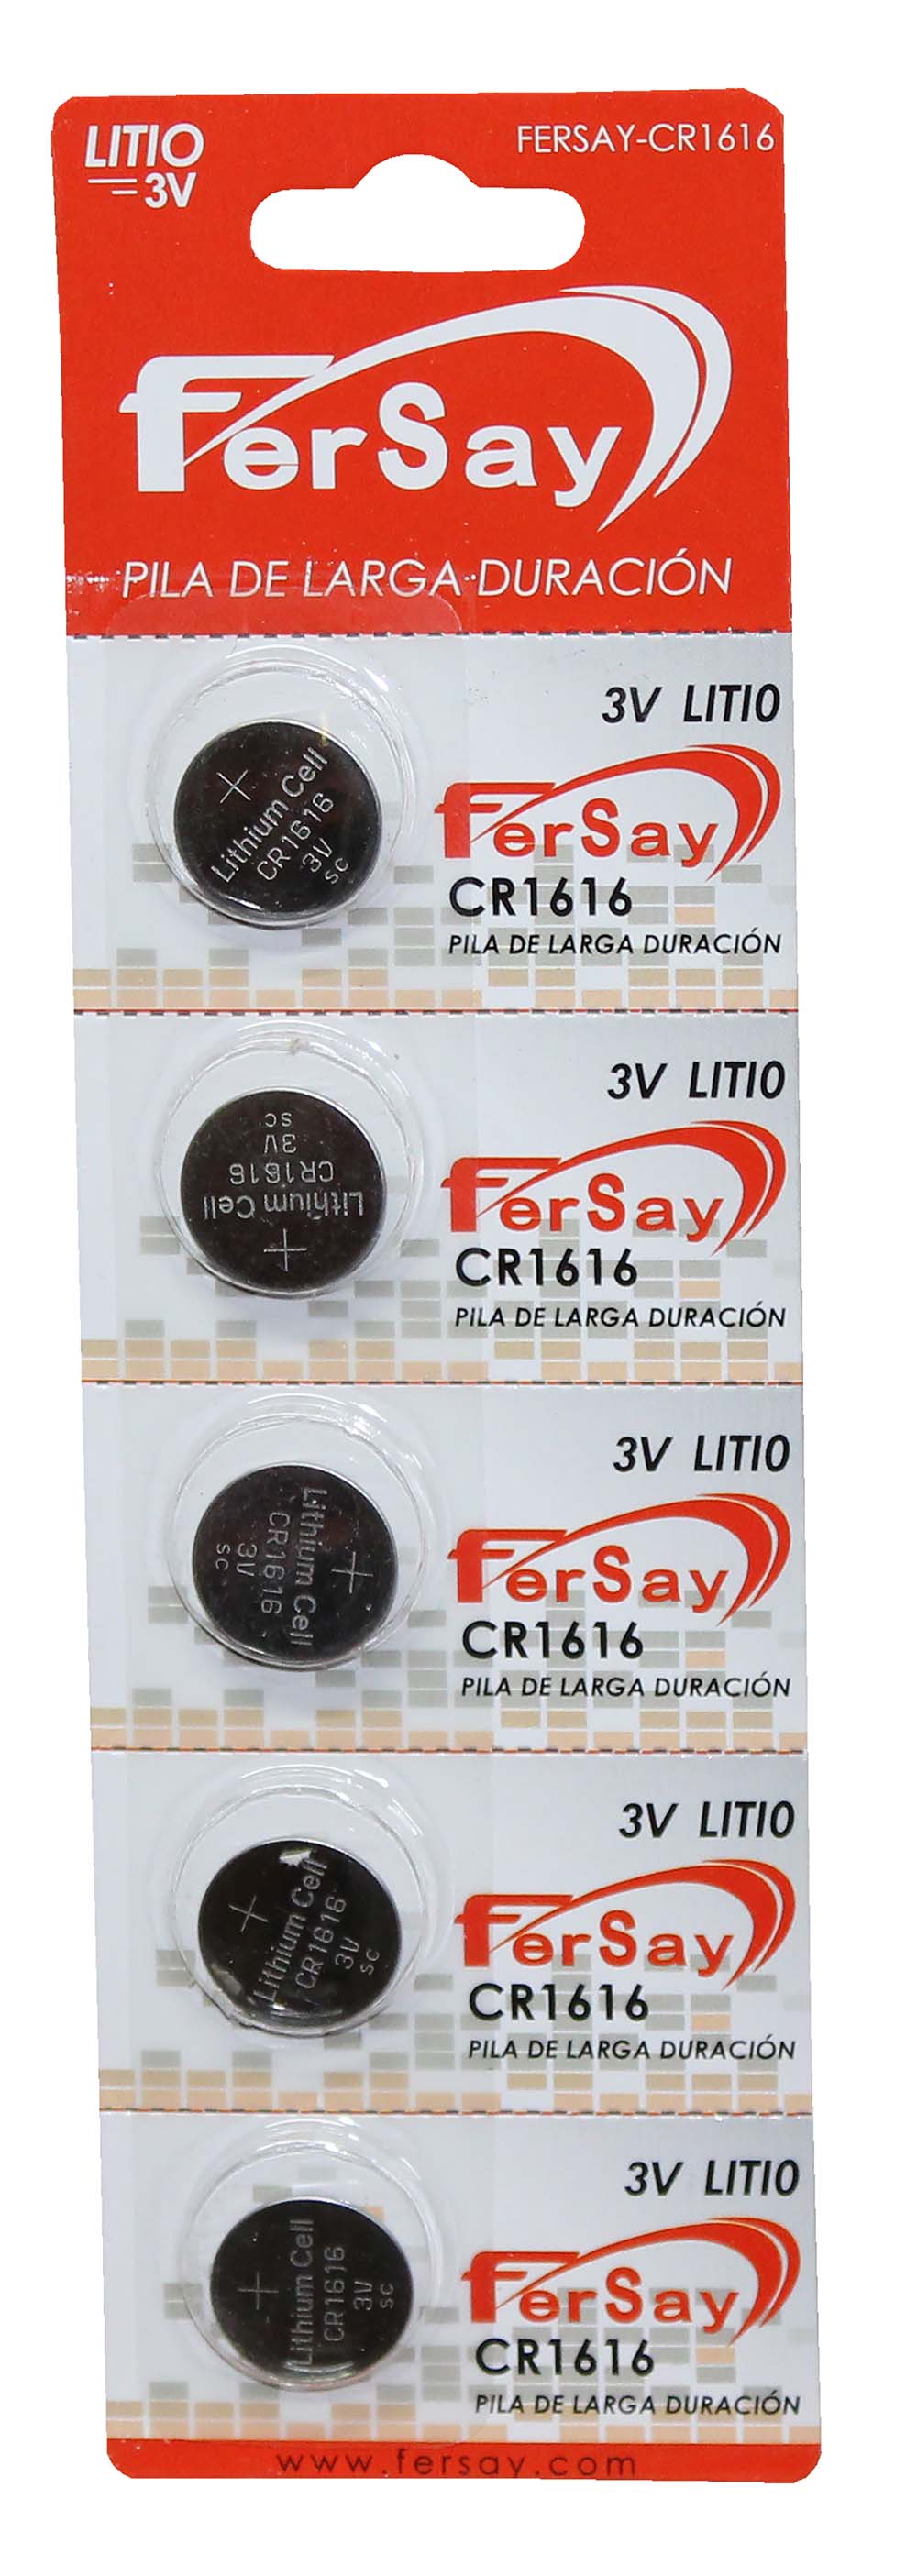 Pila litio tipo botón CR1616 Fersay. - FERSAYCR1616 - FERSAY